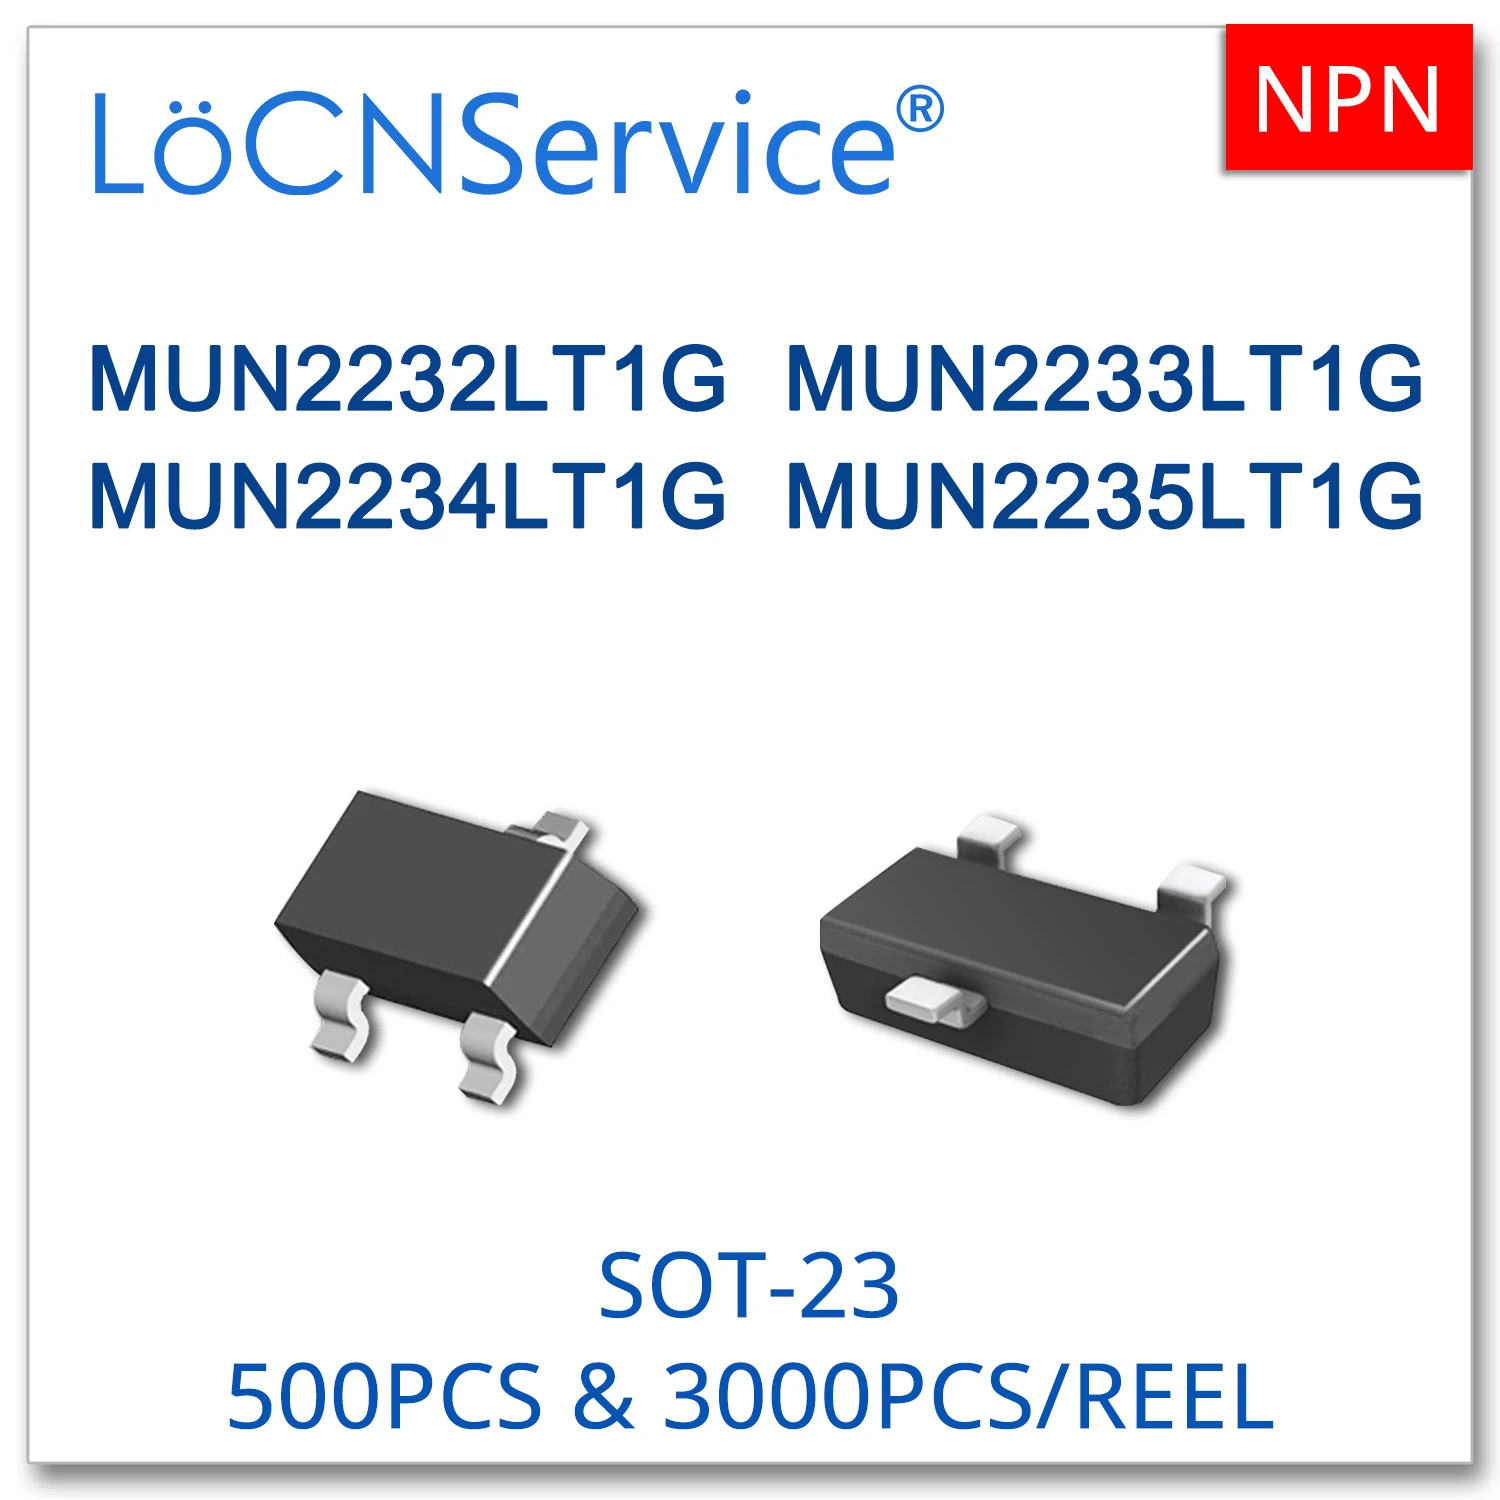 

LoCNService 3000PCS 500PCS SOT23 SC59 MUN2232LT1G MUN2233LT1G MUN2234LT1G MUN2235LT1G NPN SMD Transistor High quality